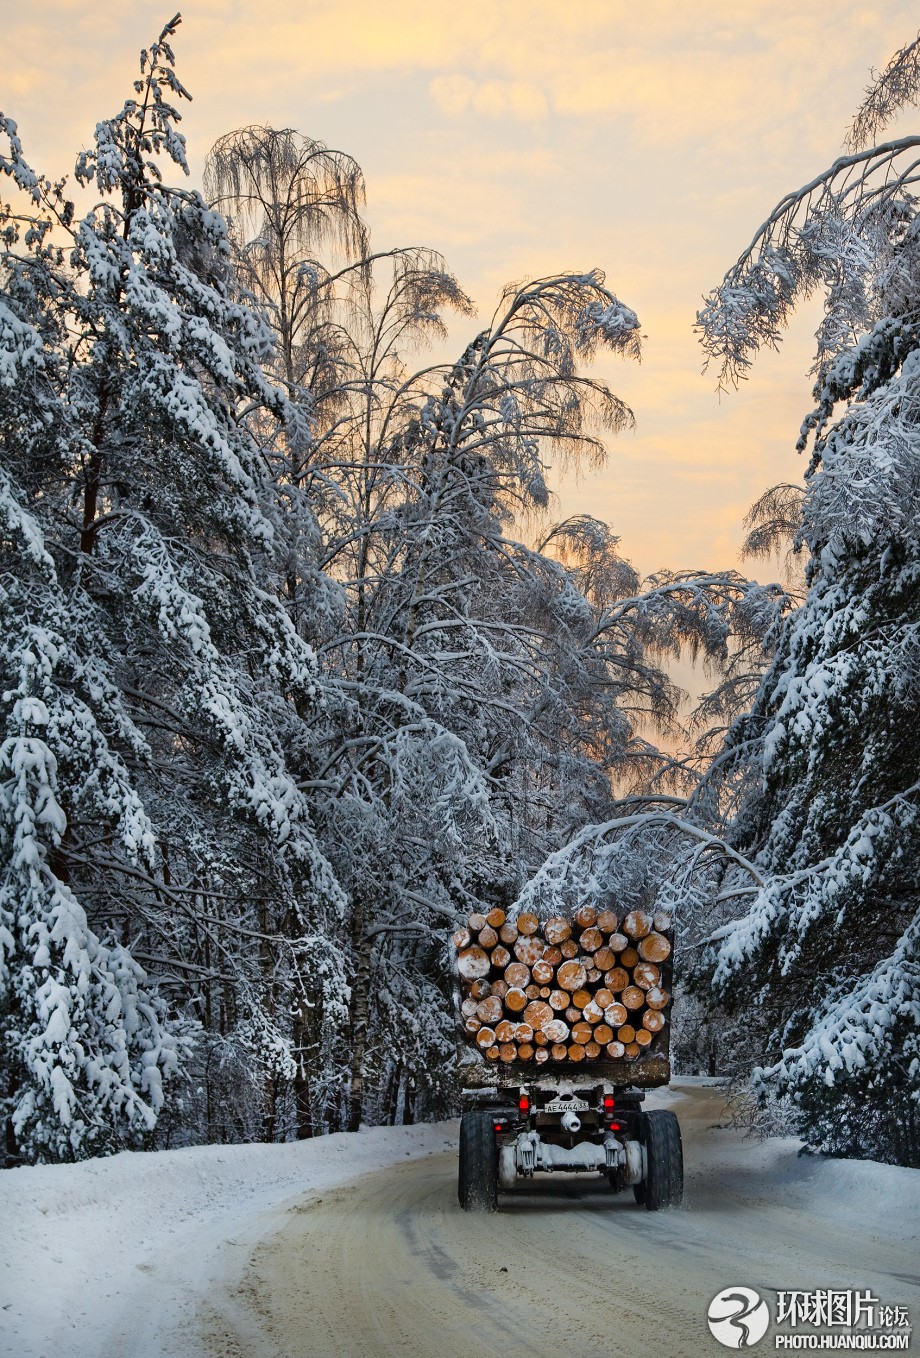 2011年度俄罗斯最佳自然摄影